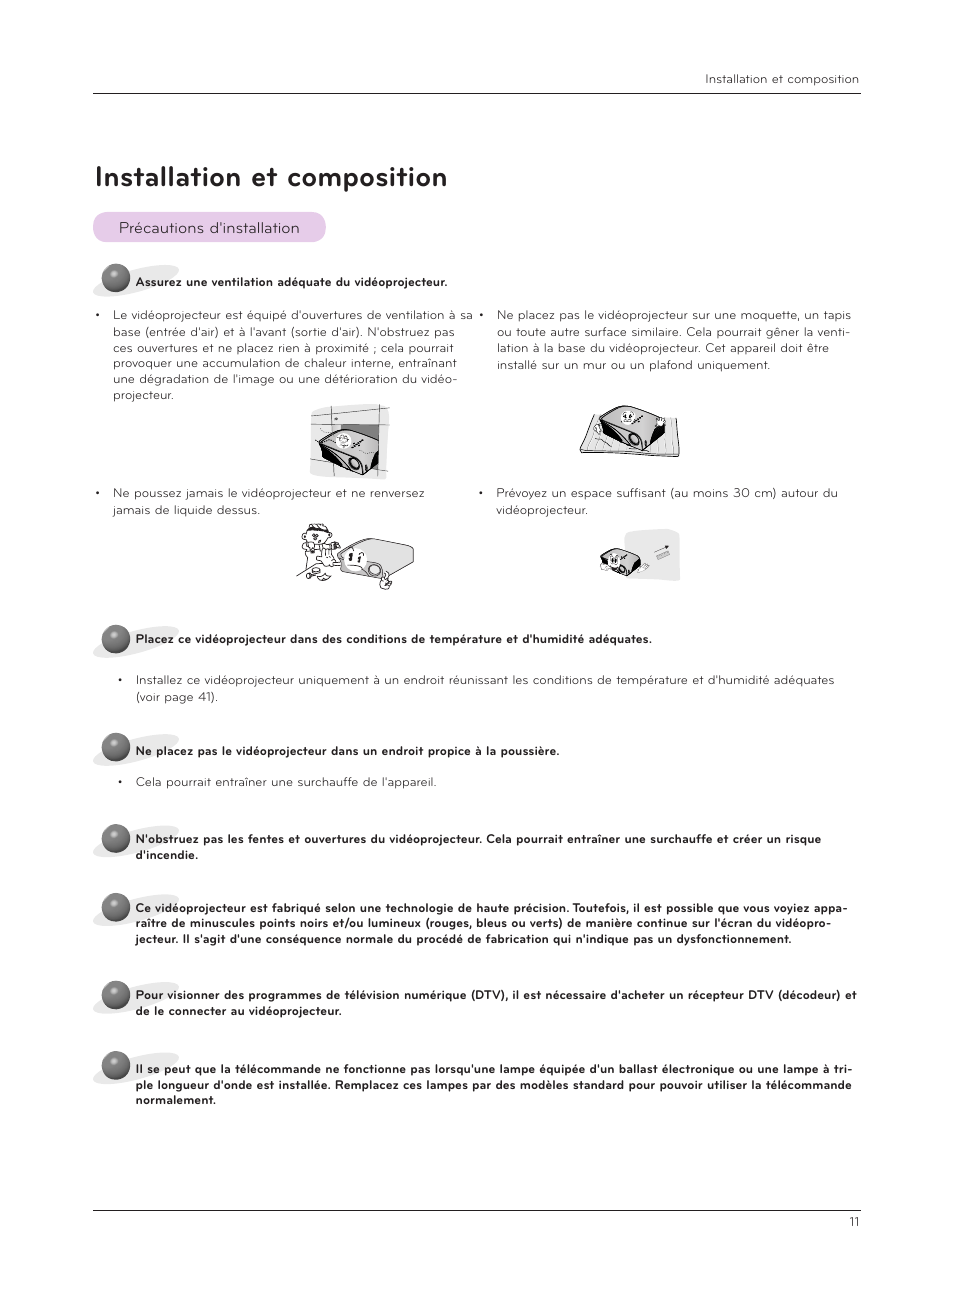 Installation et composition, Précautions d'installation | LG HS200G Manuel d'utilisation | Page 11 / 42